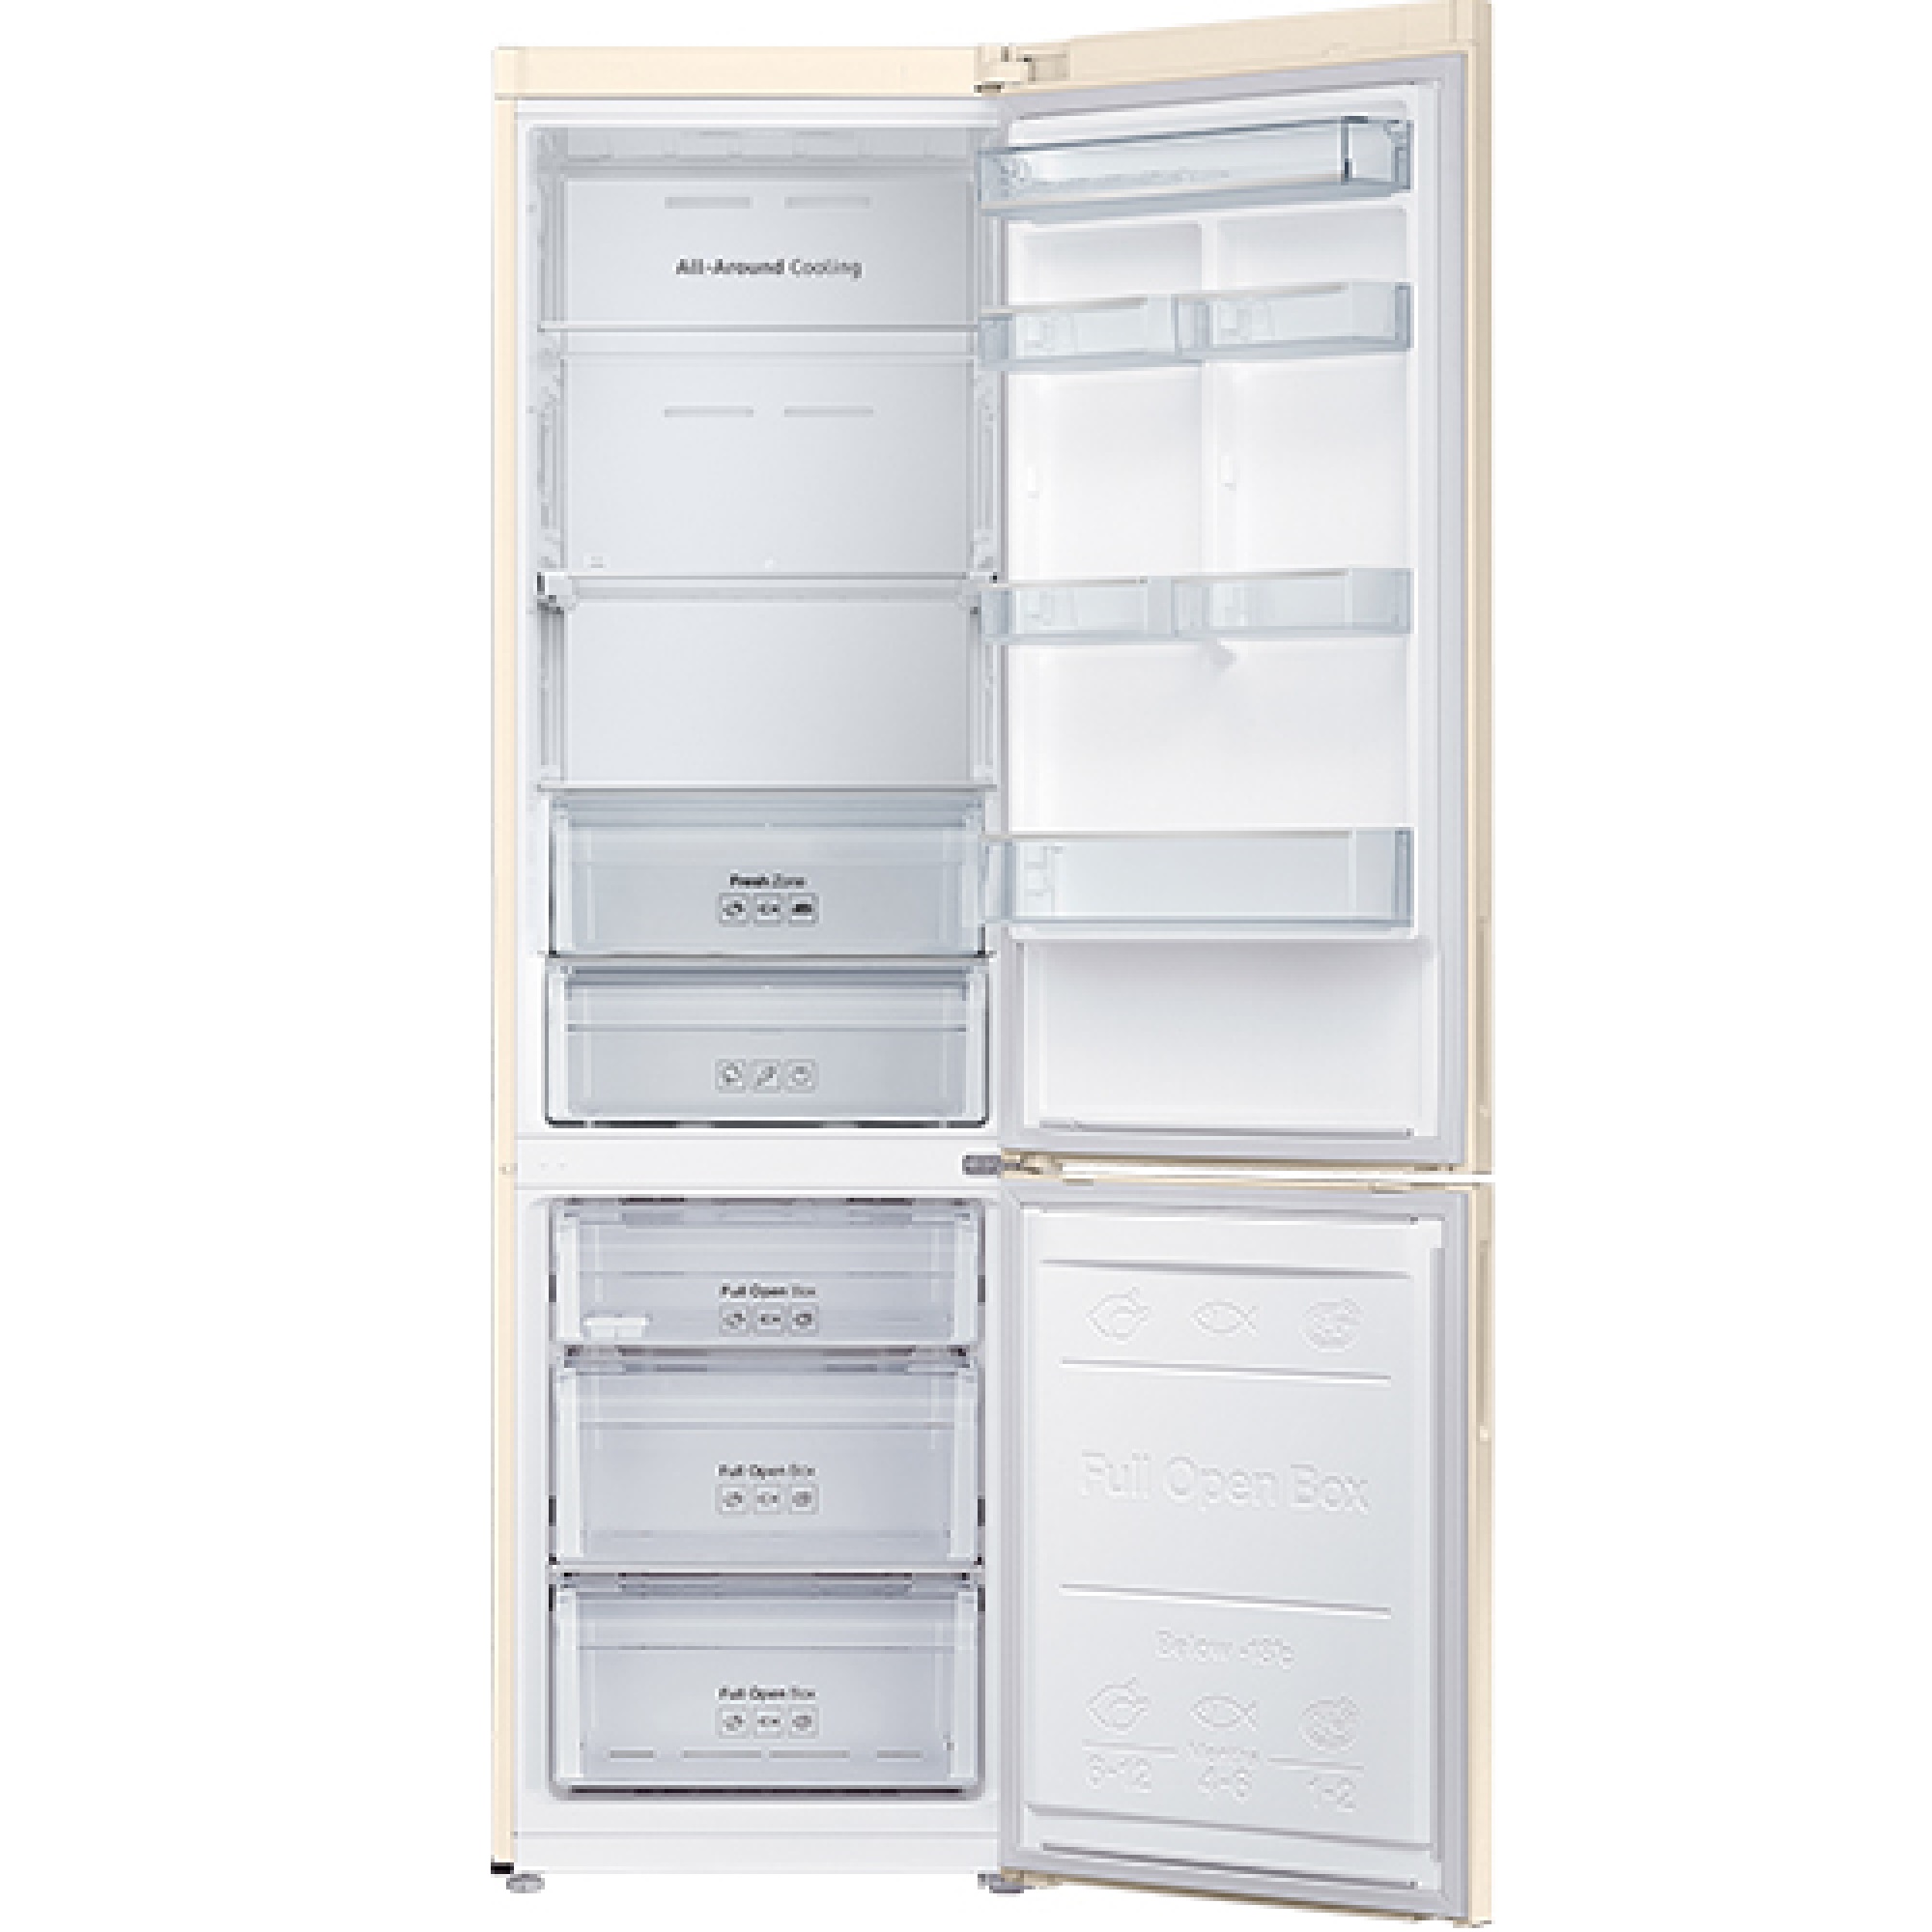 Холодильник lg ga b509clwl. Холодильник LG ga-b509cbtl. Холодильник LG ga-b419slul. LG ga-b419slul.